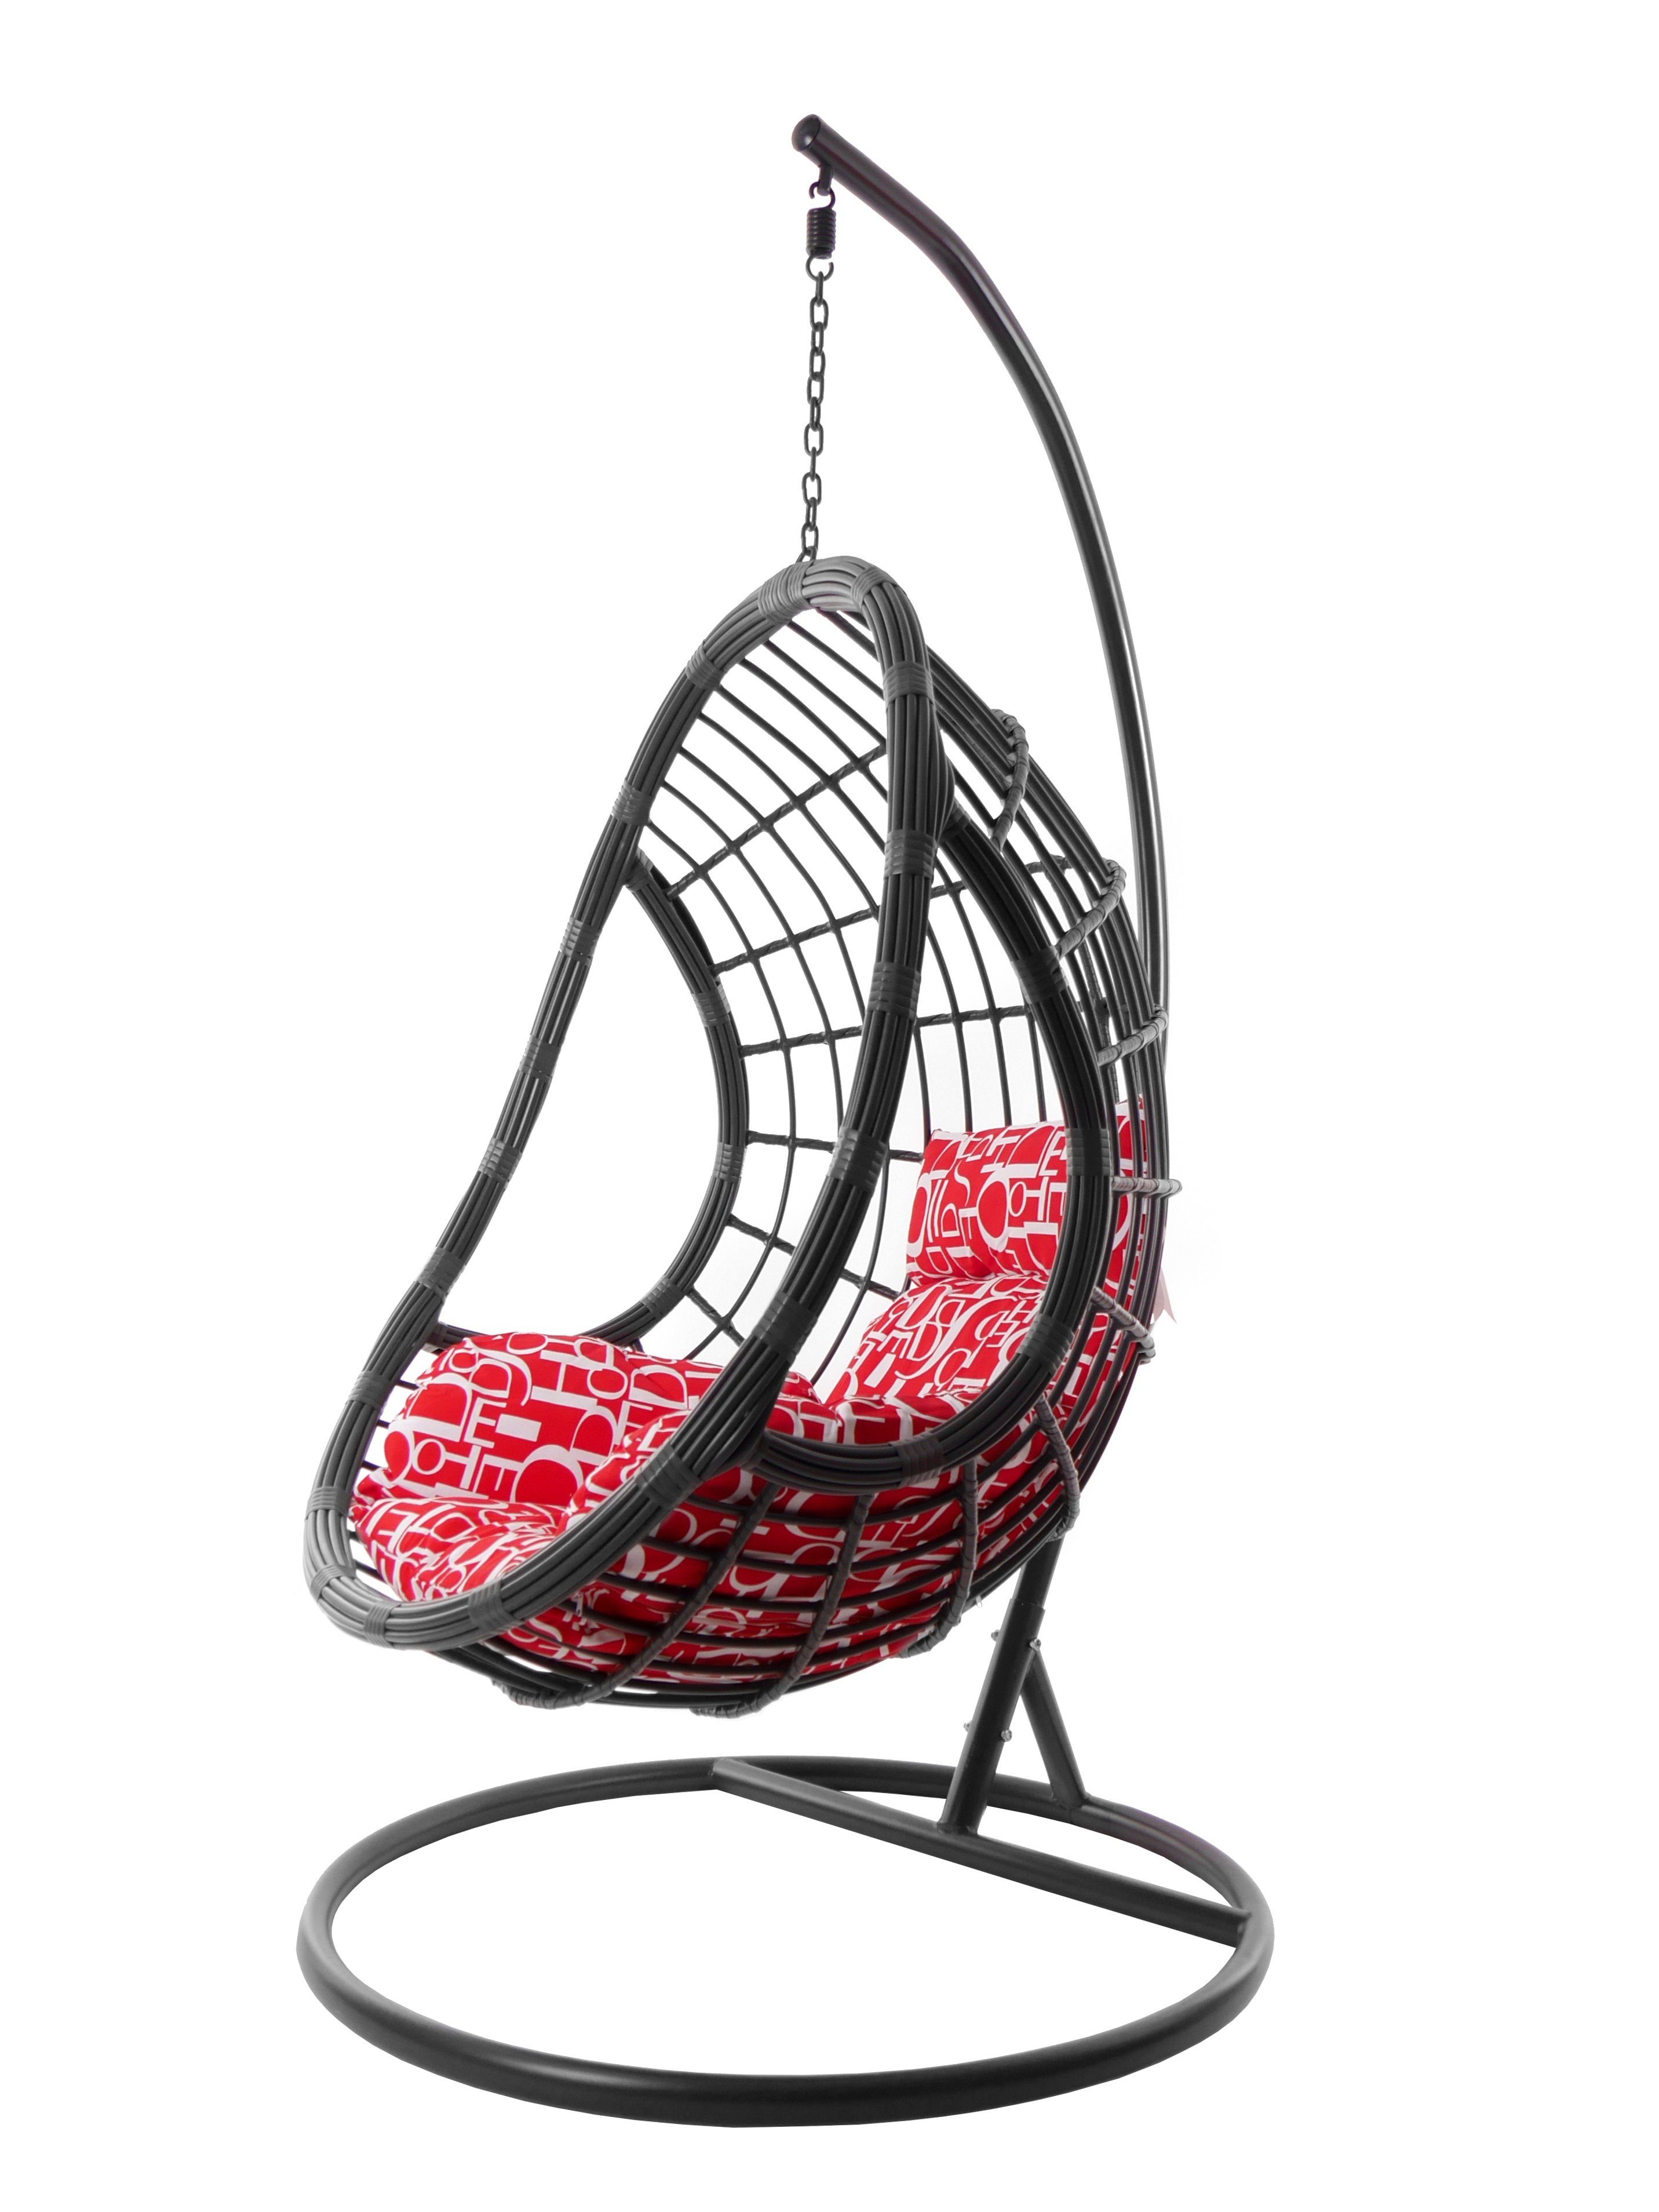 KIDEO Hängesessel Hängesessel PALMANOVA grau, moderne Loungemöbel, Hängestuhl in grau, inklusive Gestell und Kissen buchstabenmuster (3100 red letter)